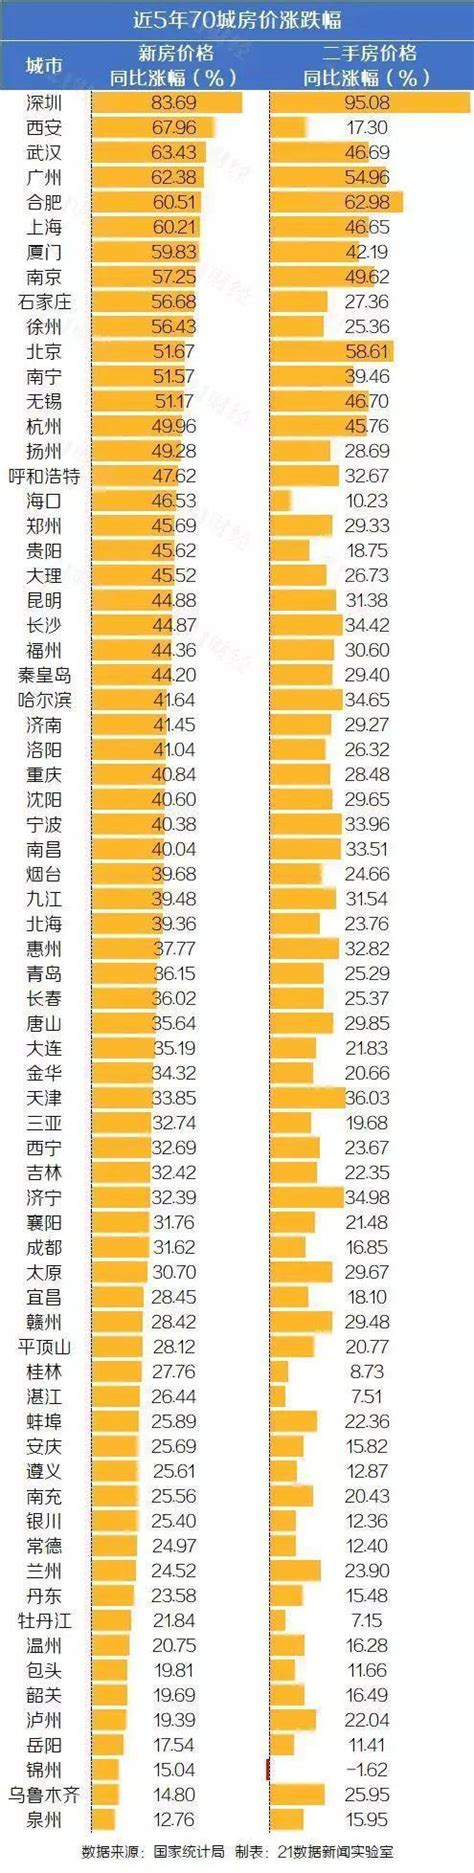 上海十年的房价走势图,上海房价已疯涨